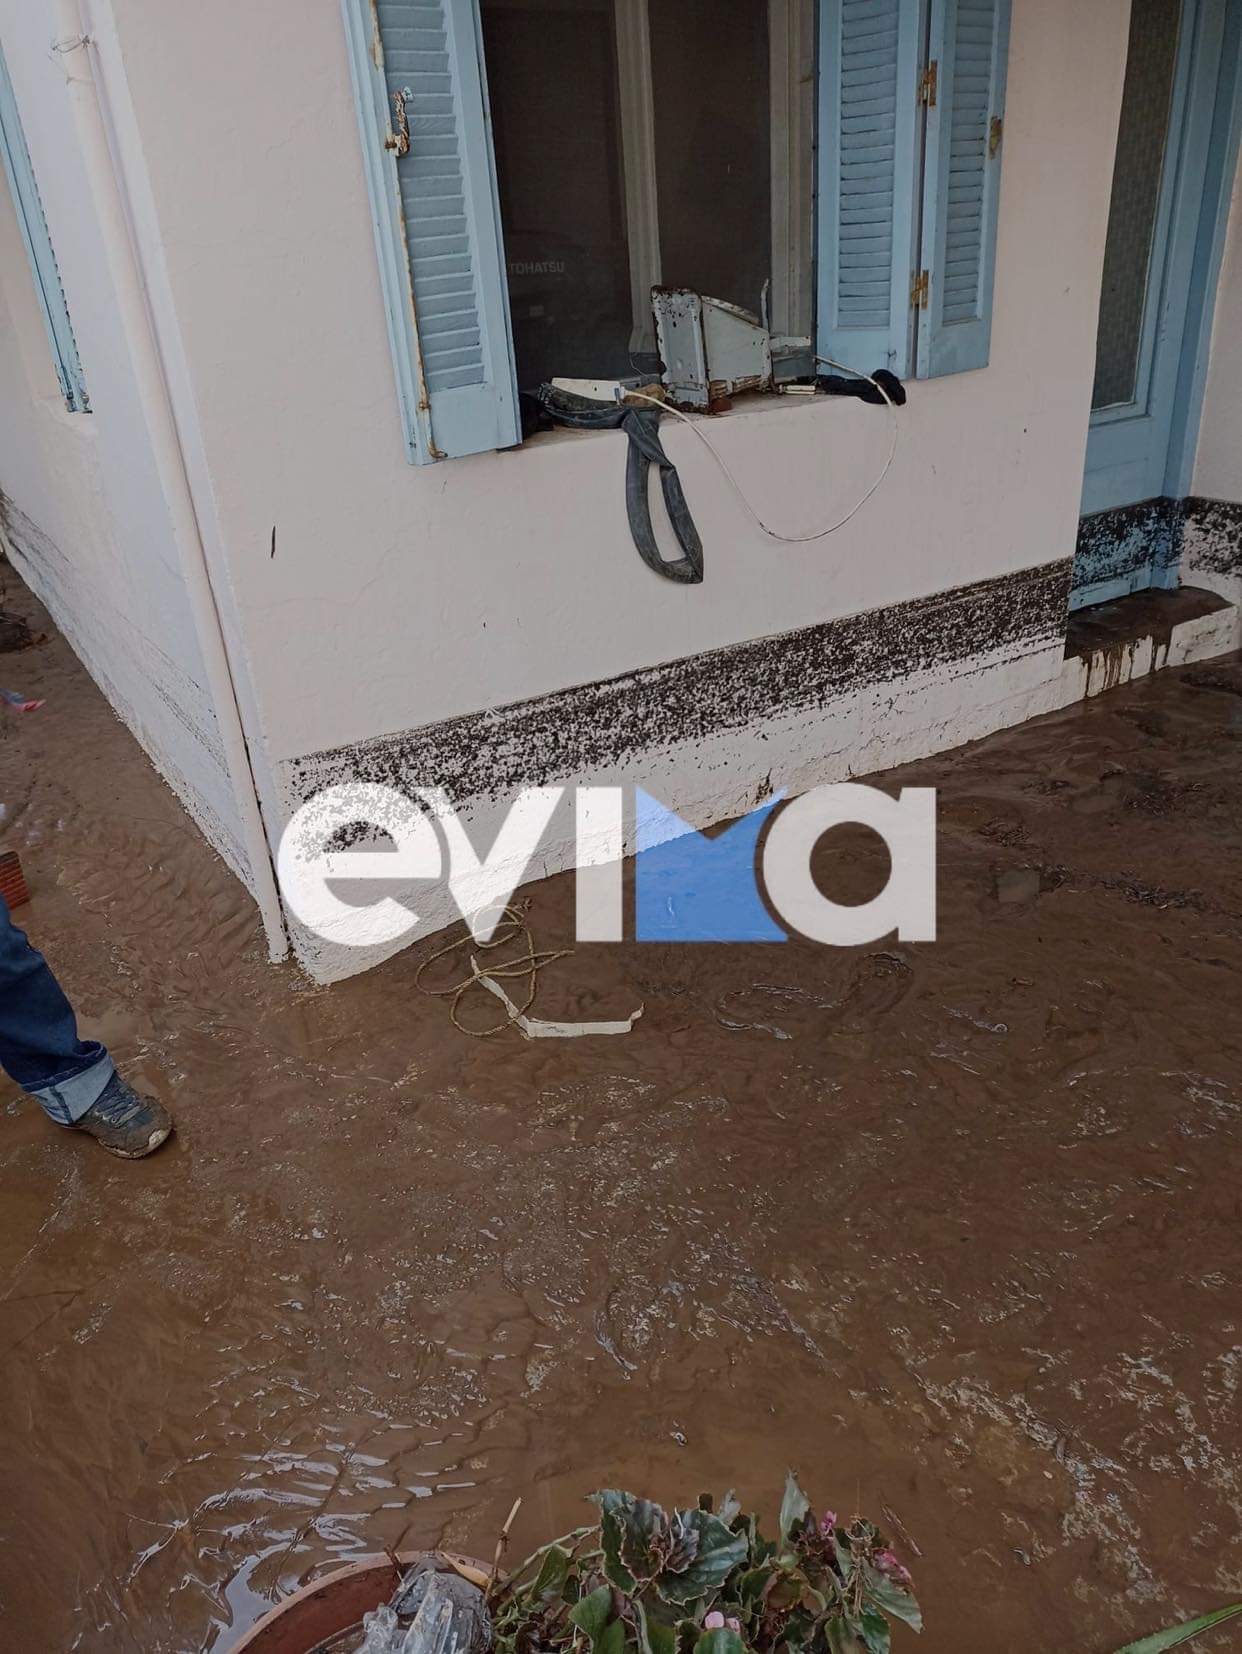 Τσαπουρνιώτης στο evima.gr: Από την Δευτέρα 11/10 οι αιτήσεις για όσους πλημμύρισαν τα σπίτια τους